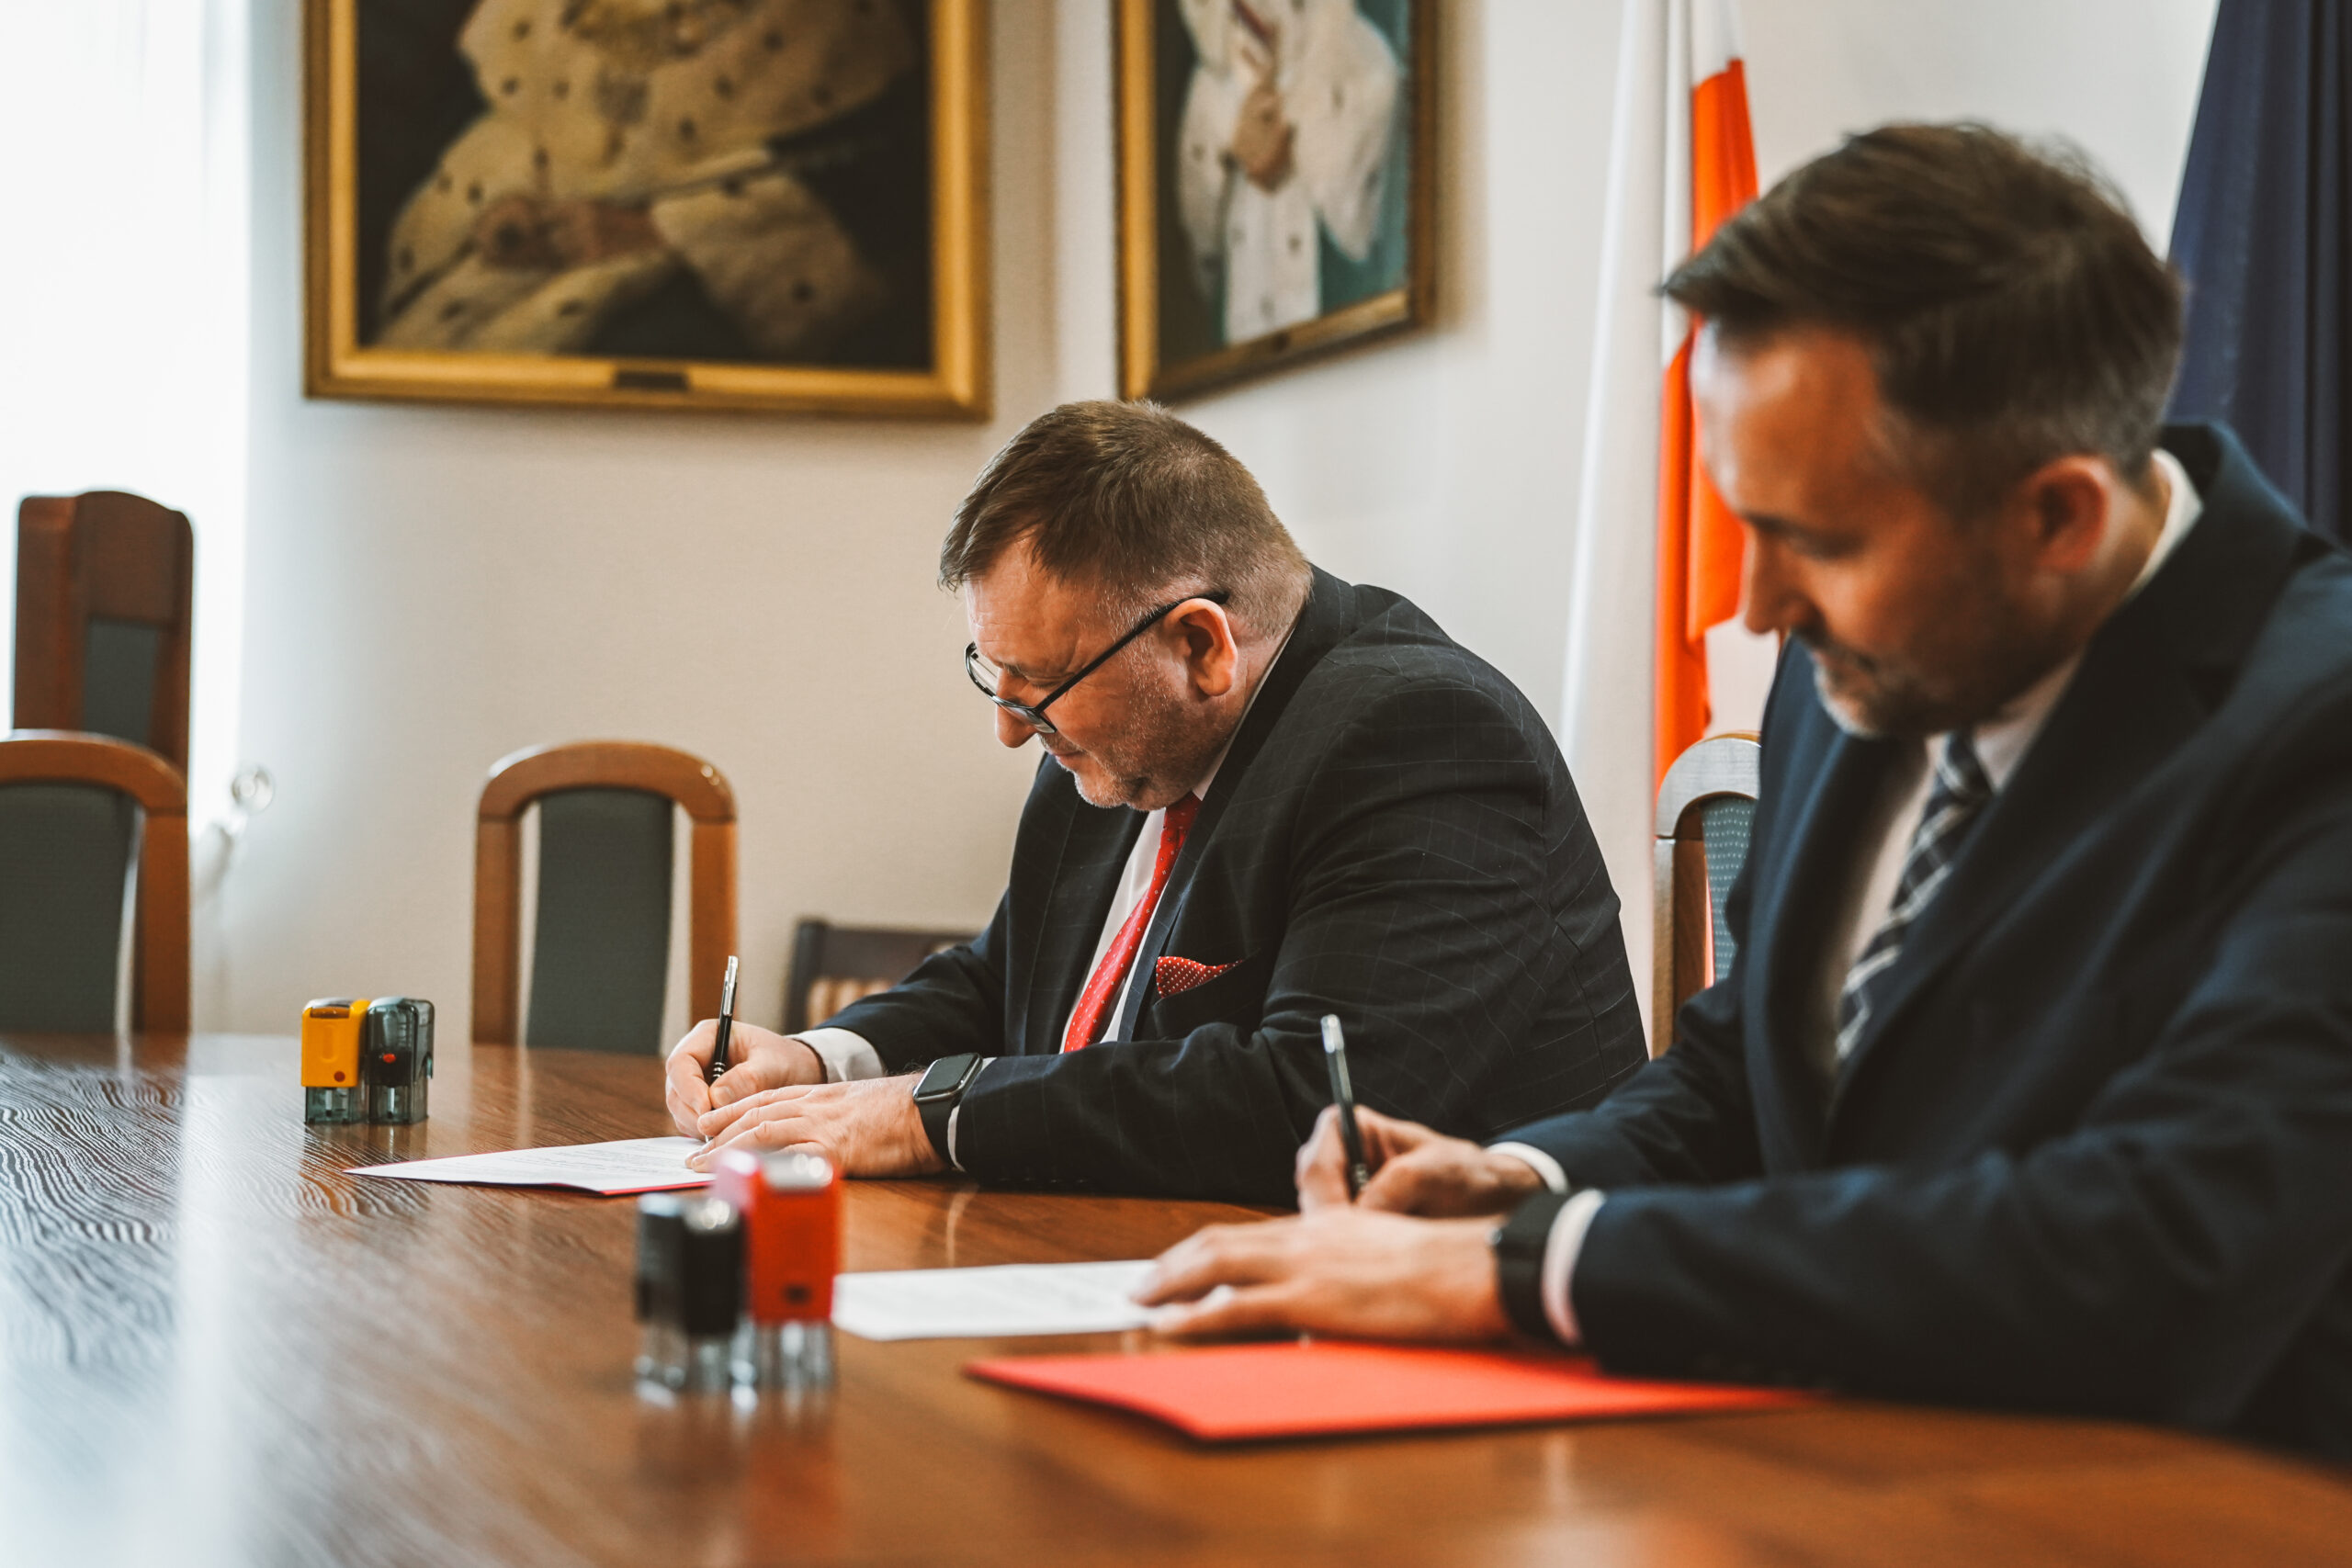 Politechnika Lubelska i ZSP nr 1 w Świdniku podpisały porozumienie o współpracy